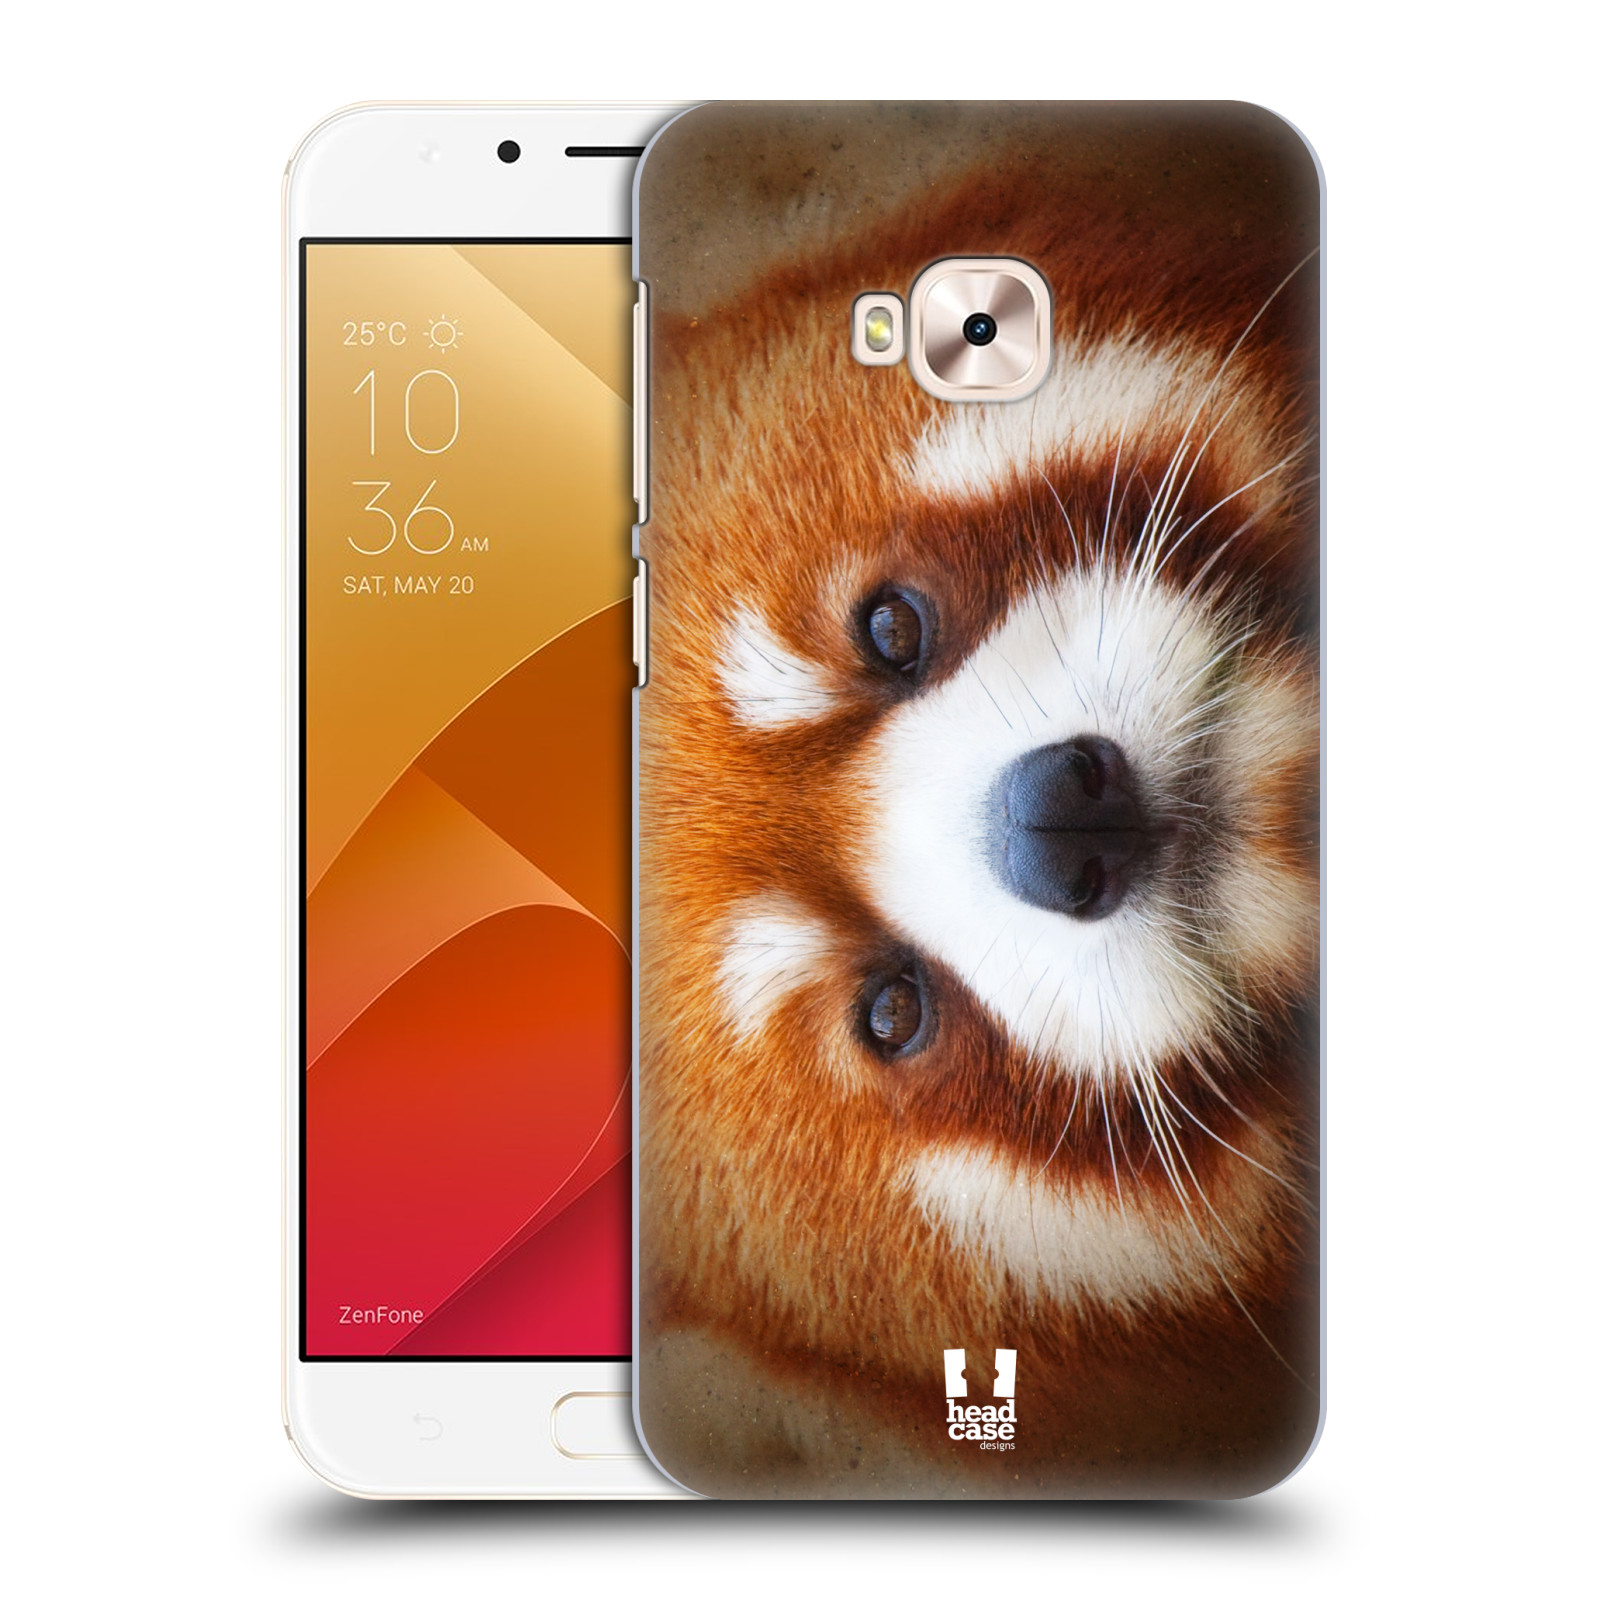 HEAD CASE plastový obal na mobil Asus Zenfone 4 Selfie Pro ZD552KL vzor Zvířecí tváře 2 medvěd panda rudá